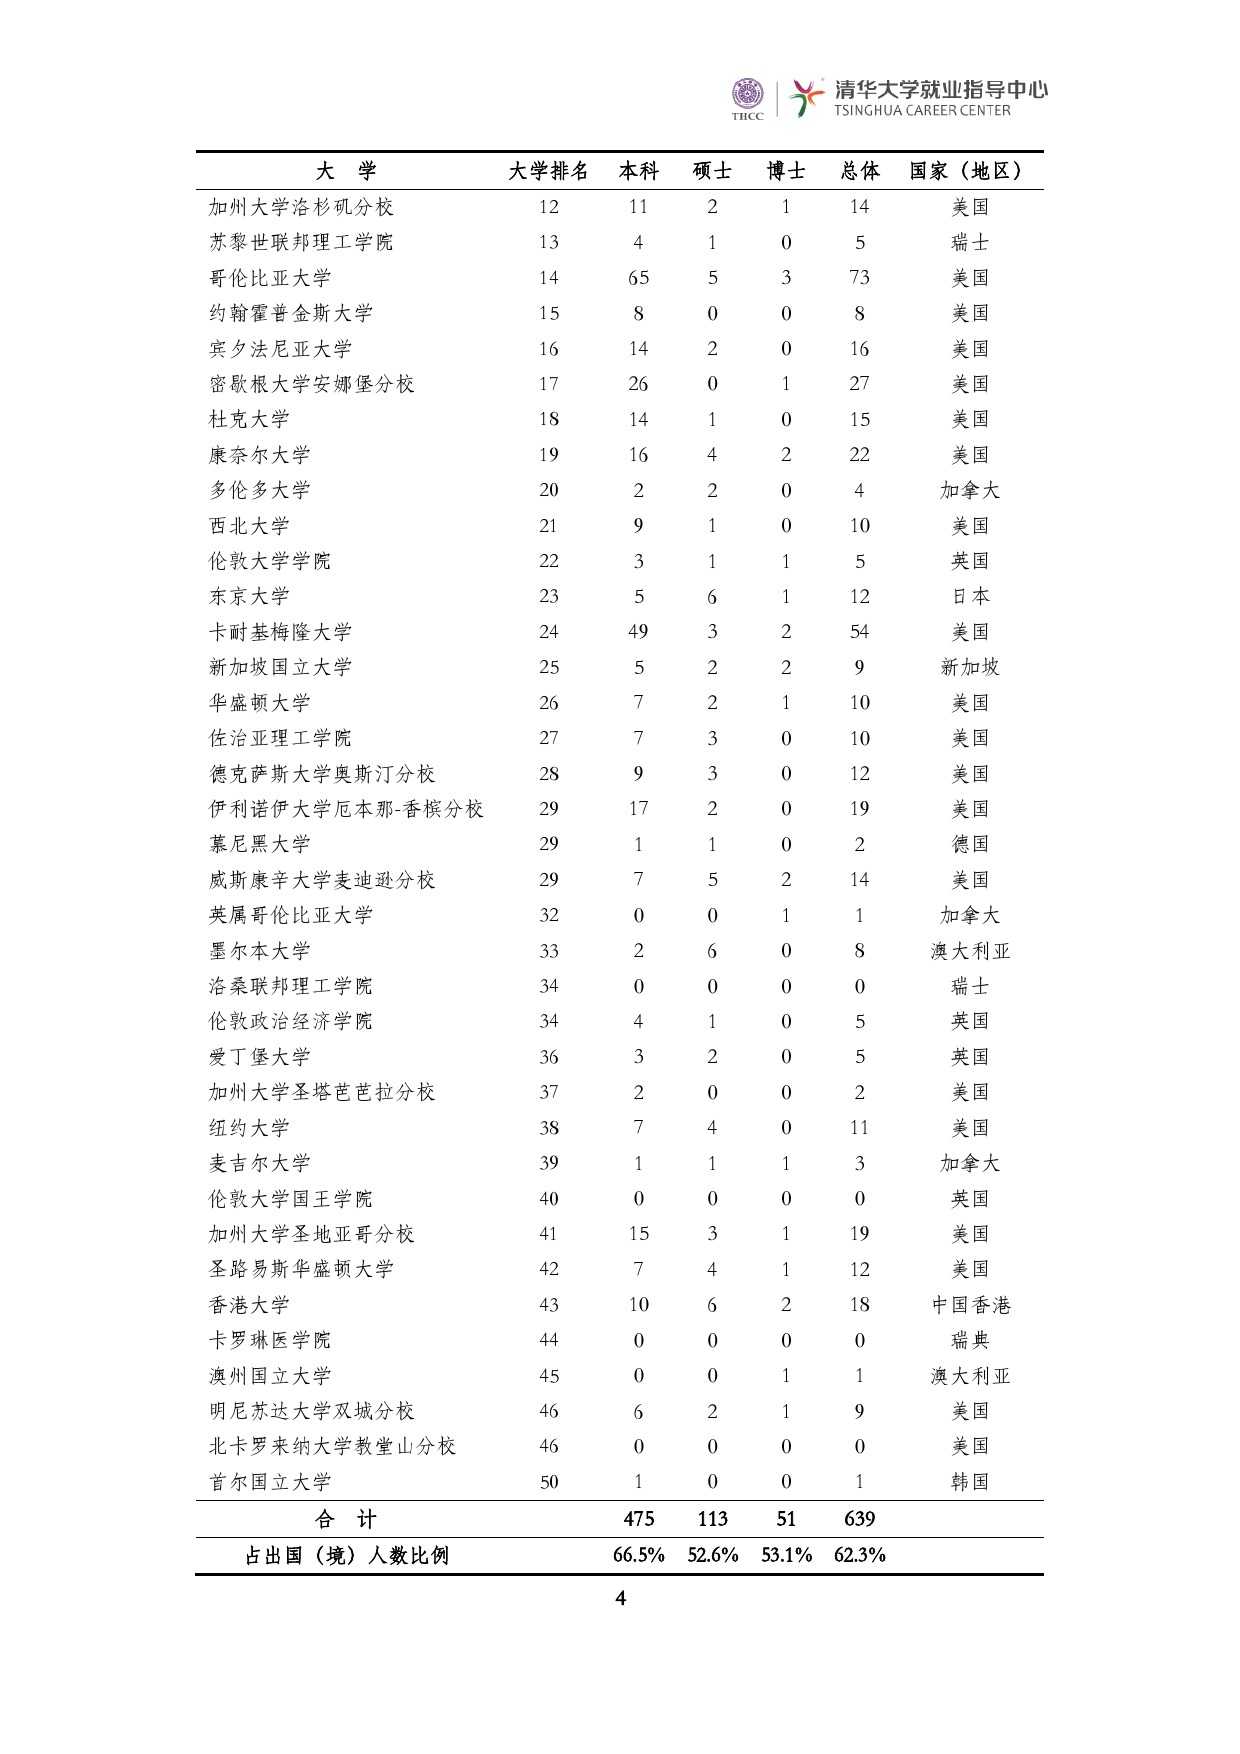 清華大學2014 年畢業生就業質量報告_000006